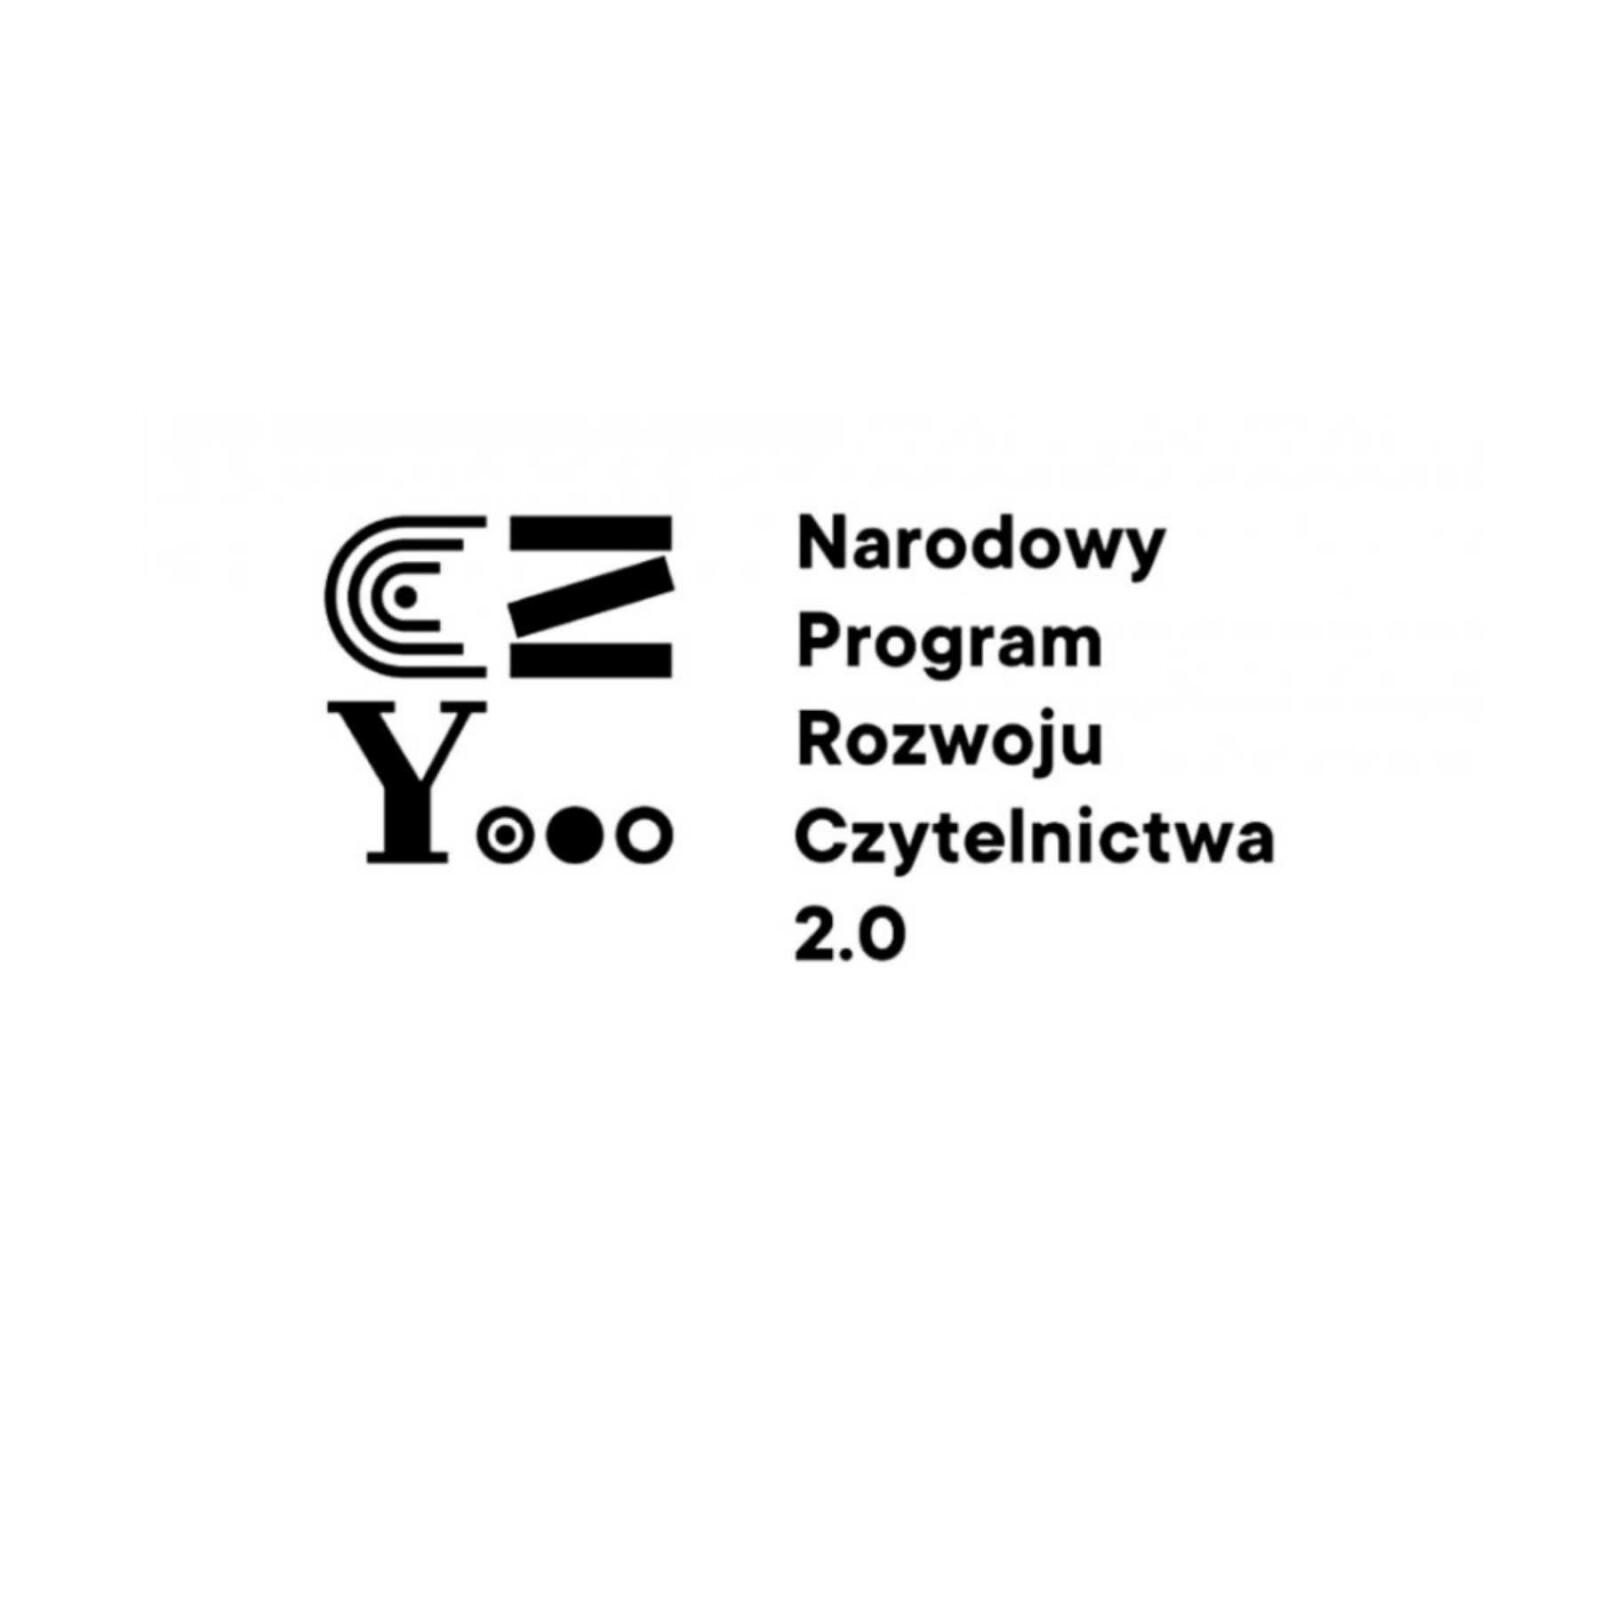 Narodowy Program Rozwoju Czytelnictwa 2.0 logo